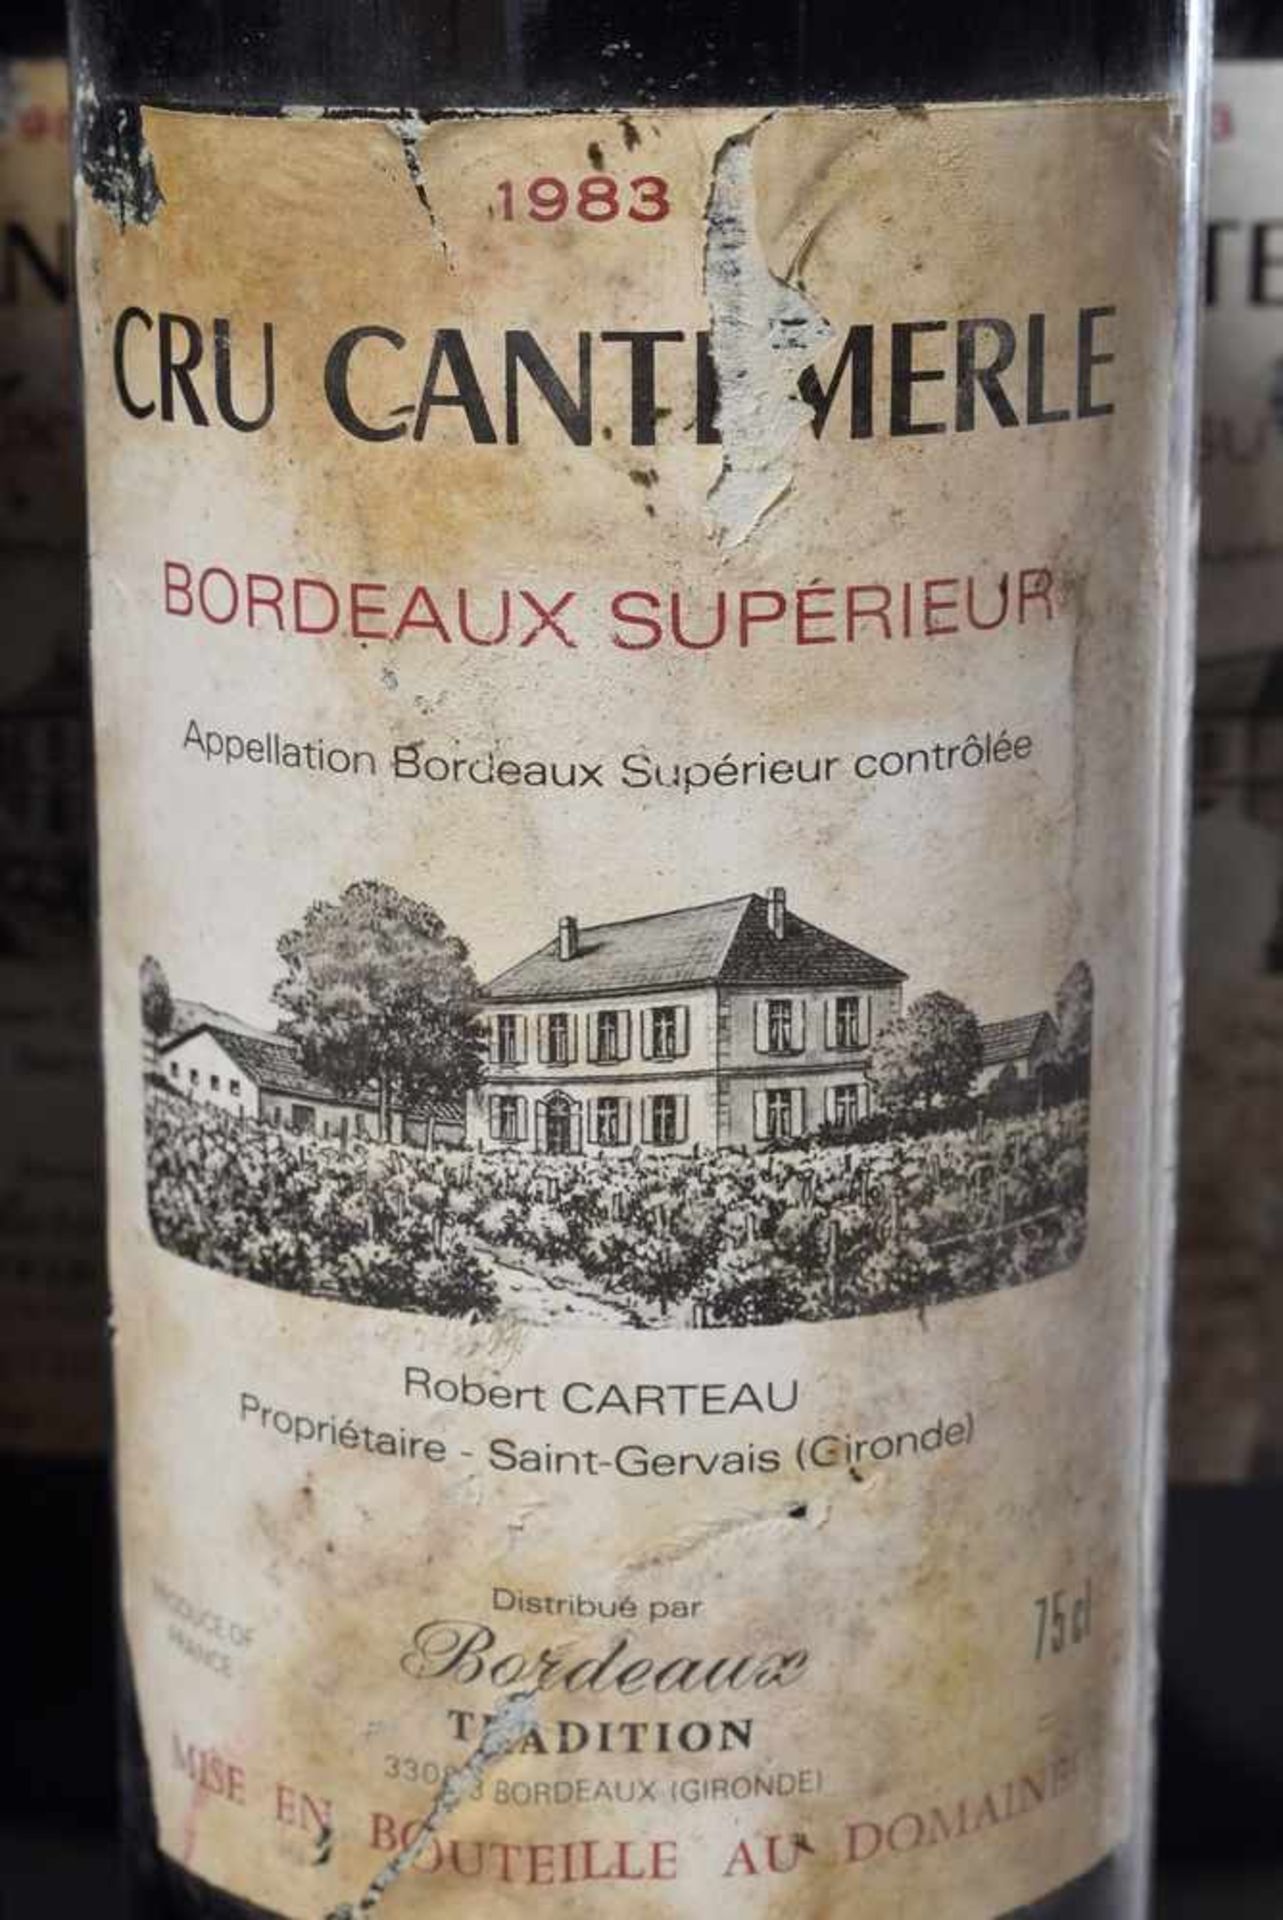 5 Flaschen Cru Cantemerle 1983, Bordeaux Superieur, Rotwein, Schlossabfüllung, 0,75 l., konstante - Bild 2 aus 2